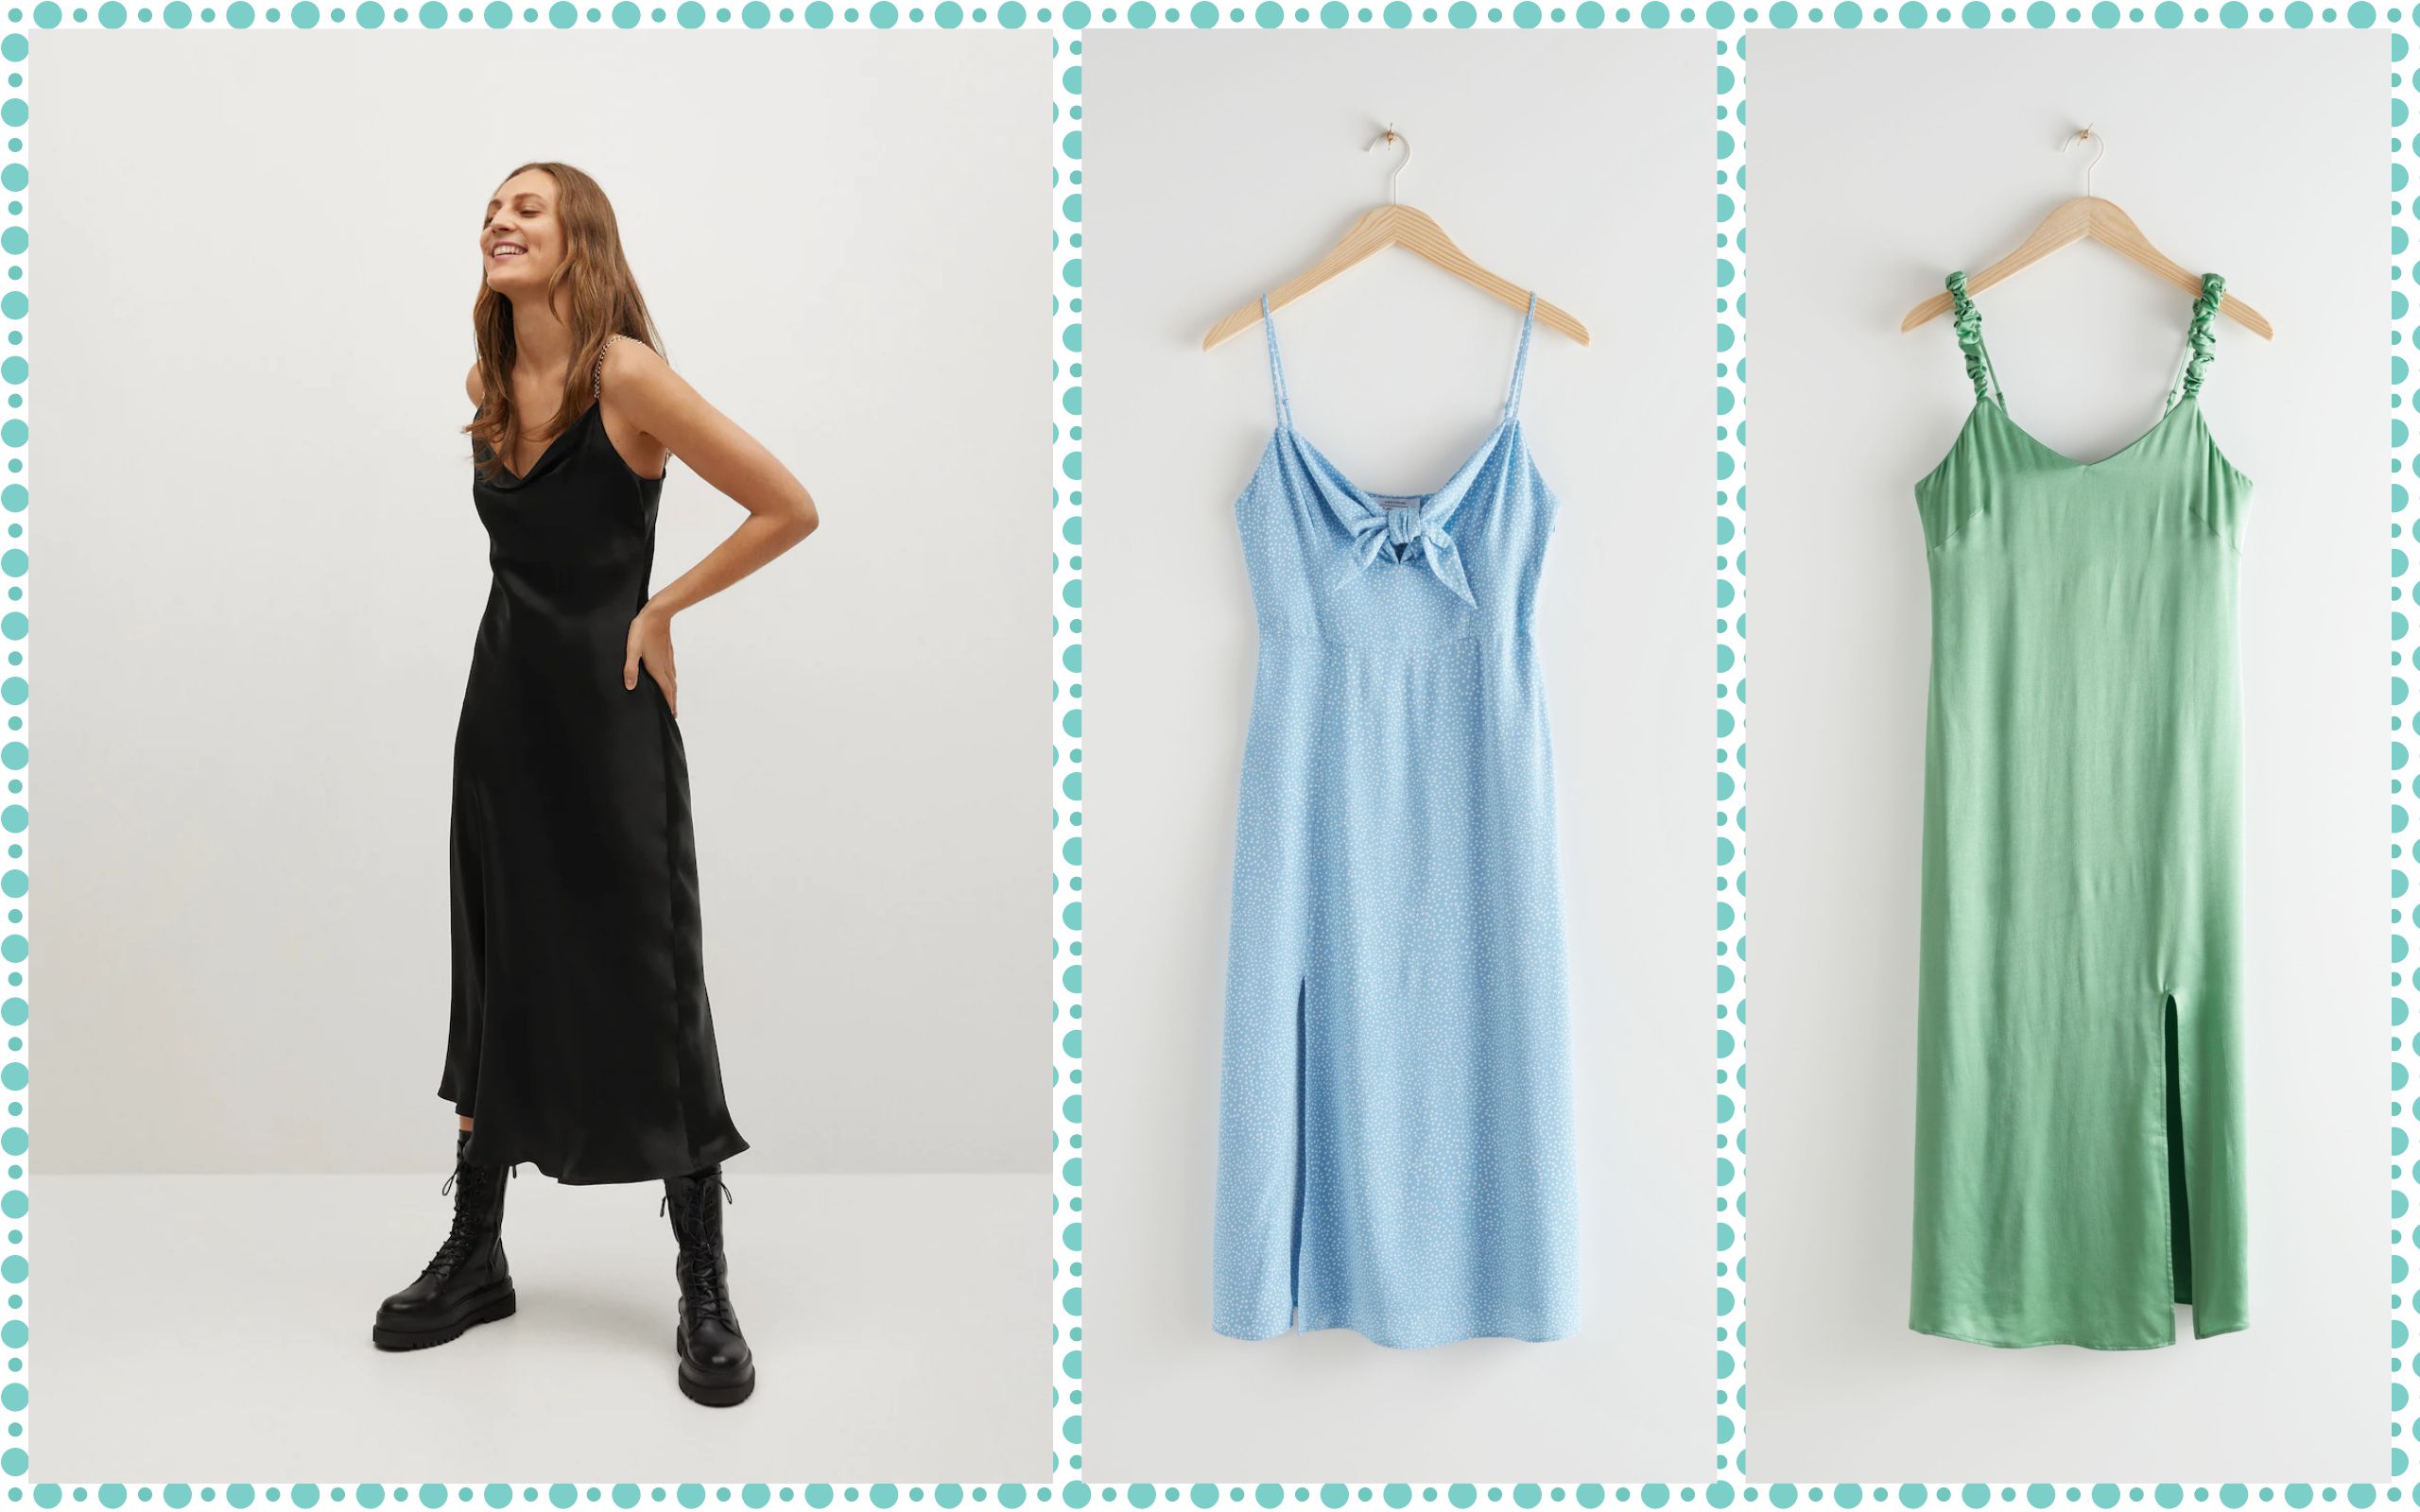 Satenska je haljina proljetni must have; izaberite jedan od 23 modela već od 139,90 kn